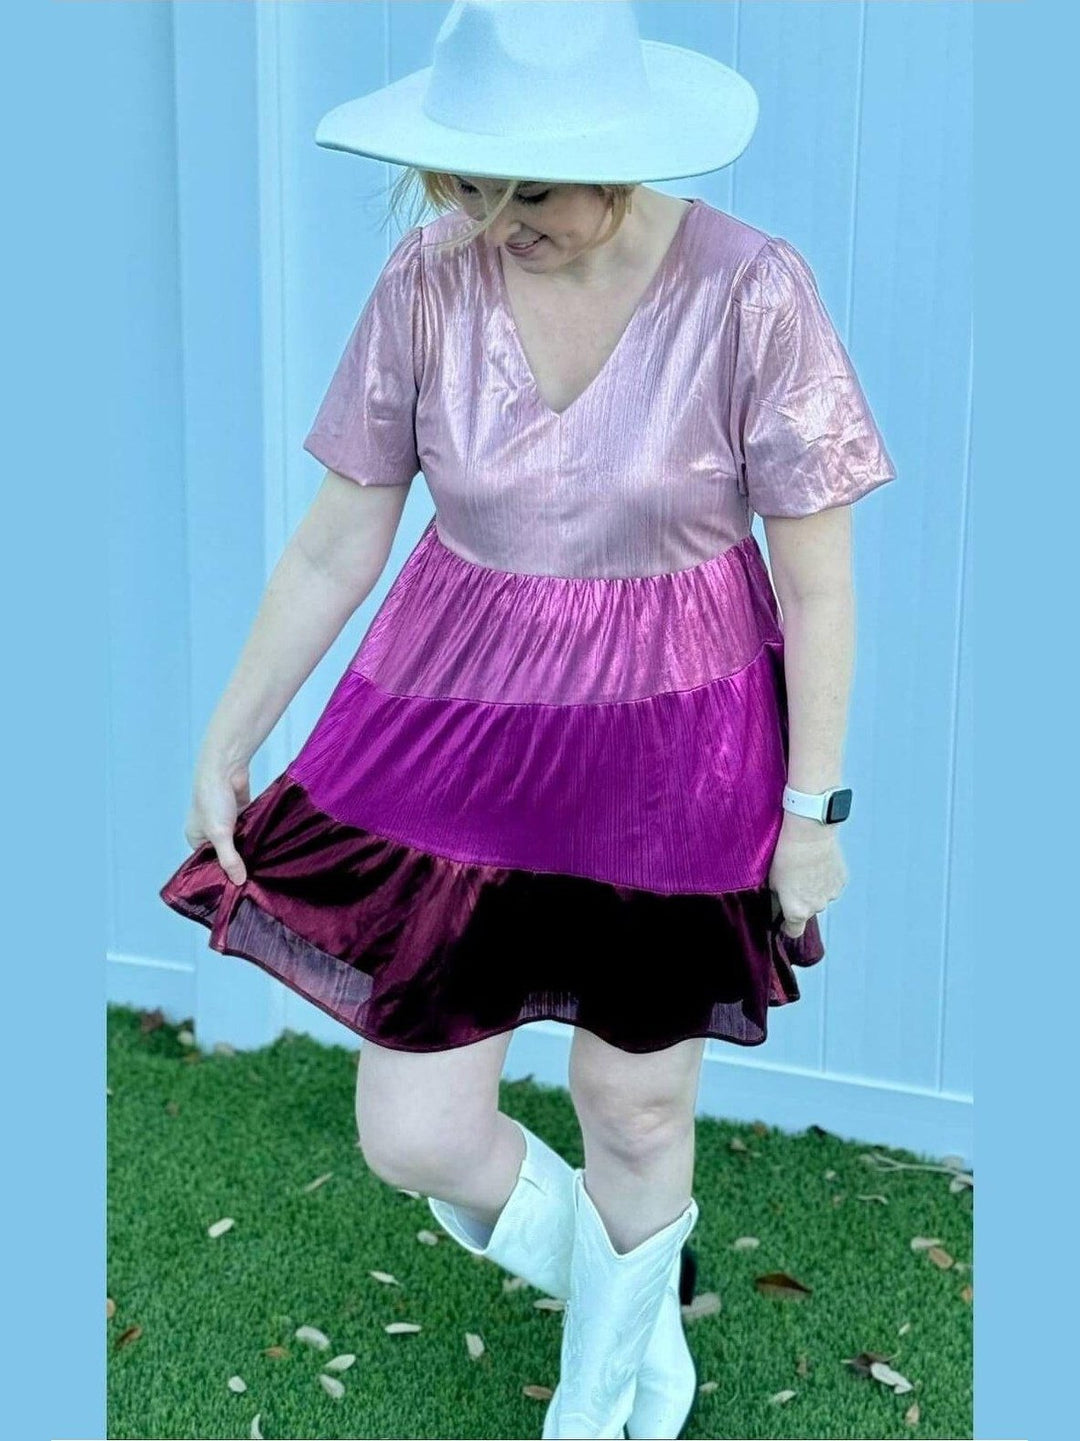 Shiny Knit Color Block Valentine's Dress